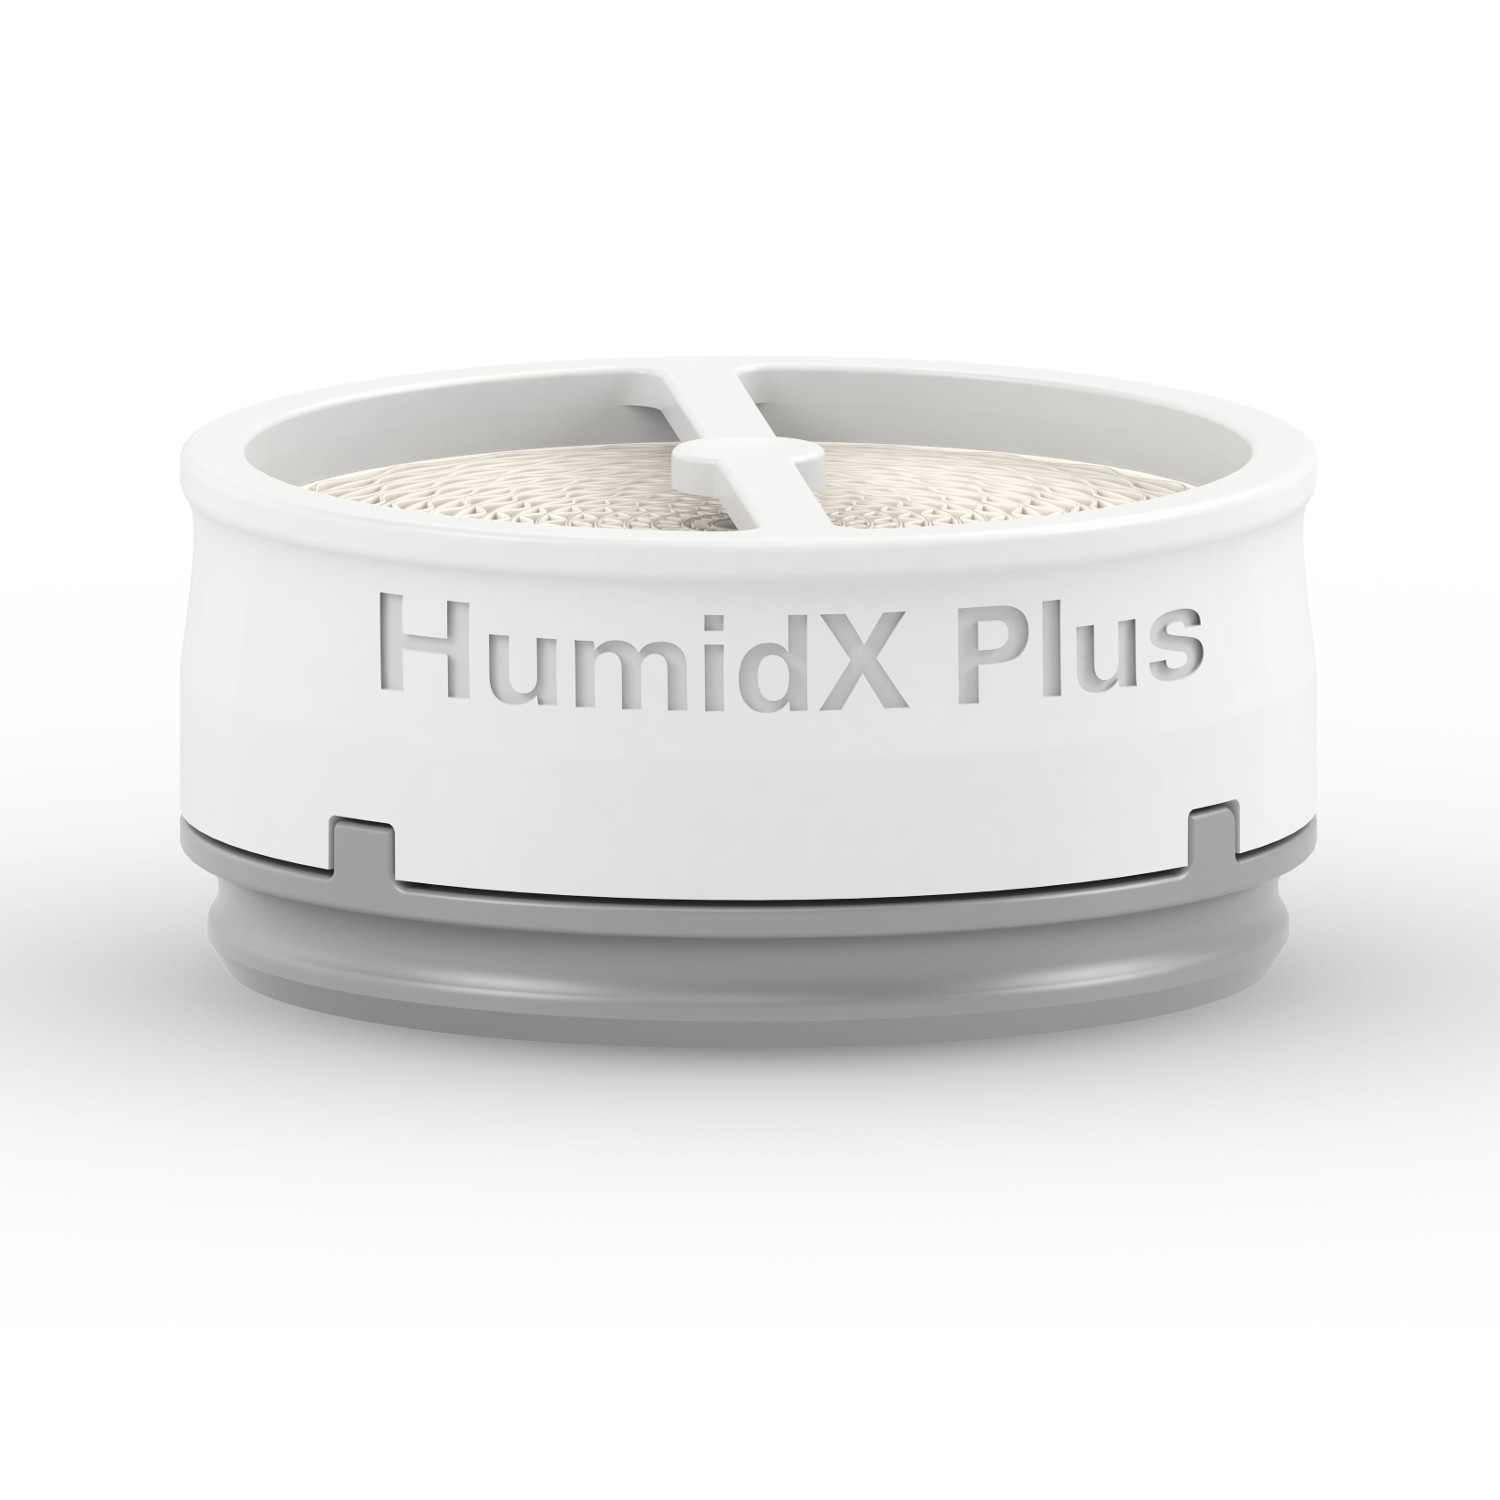 HumidX Plus wasserloser Befeuchter für AirMini von Resmed VE - 6 Stück